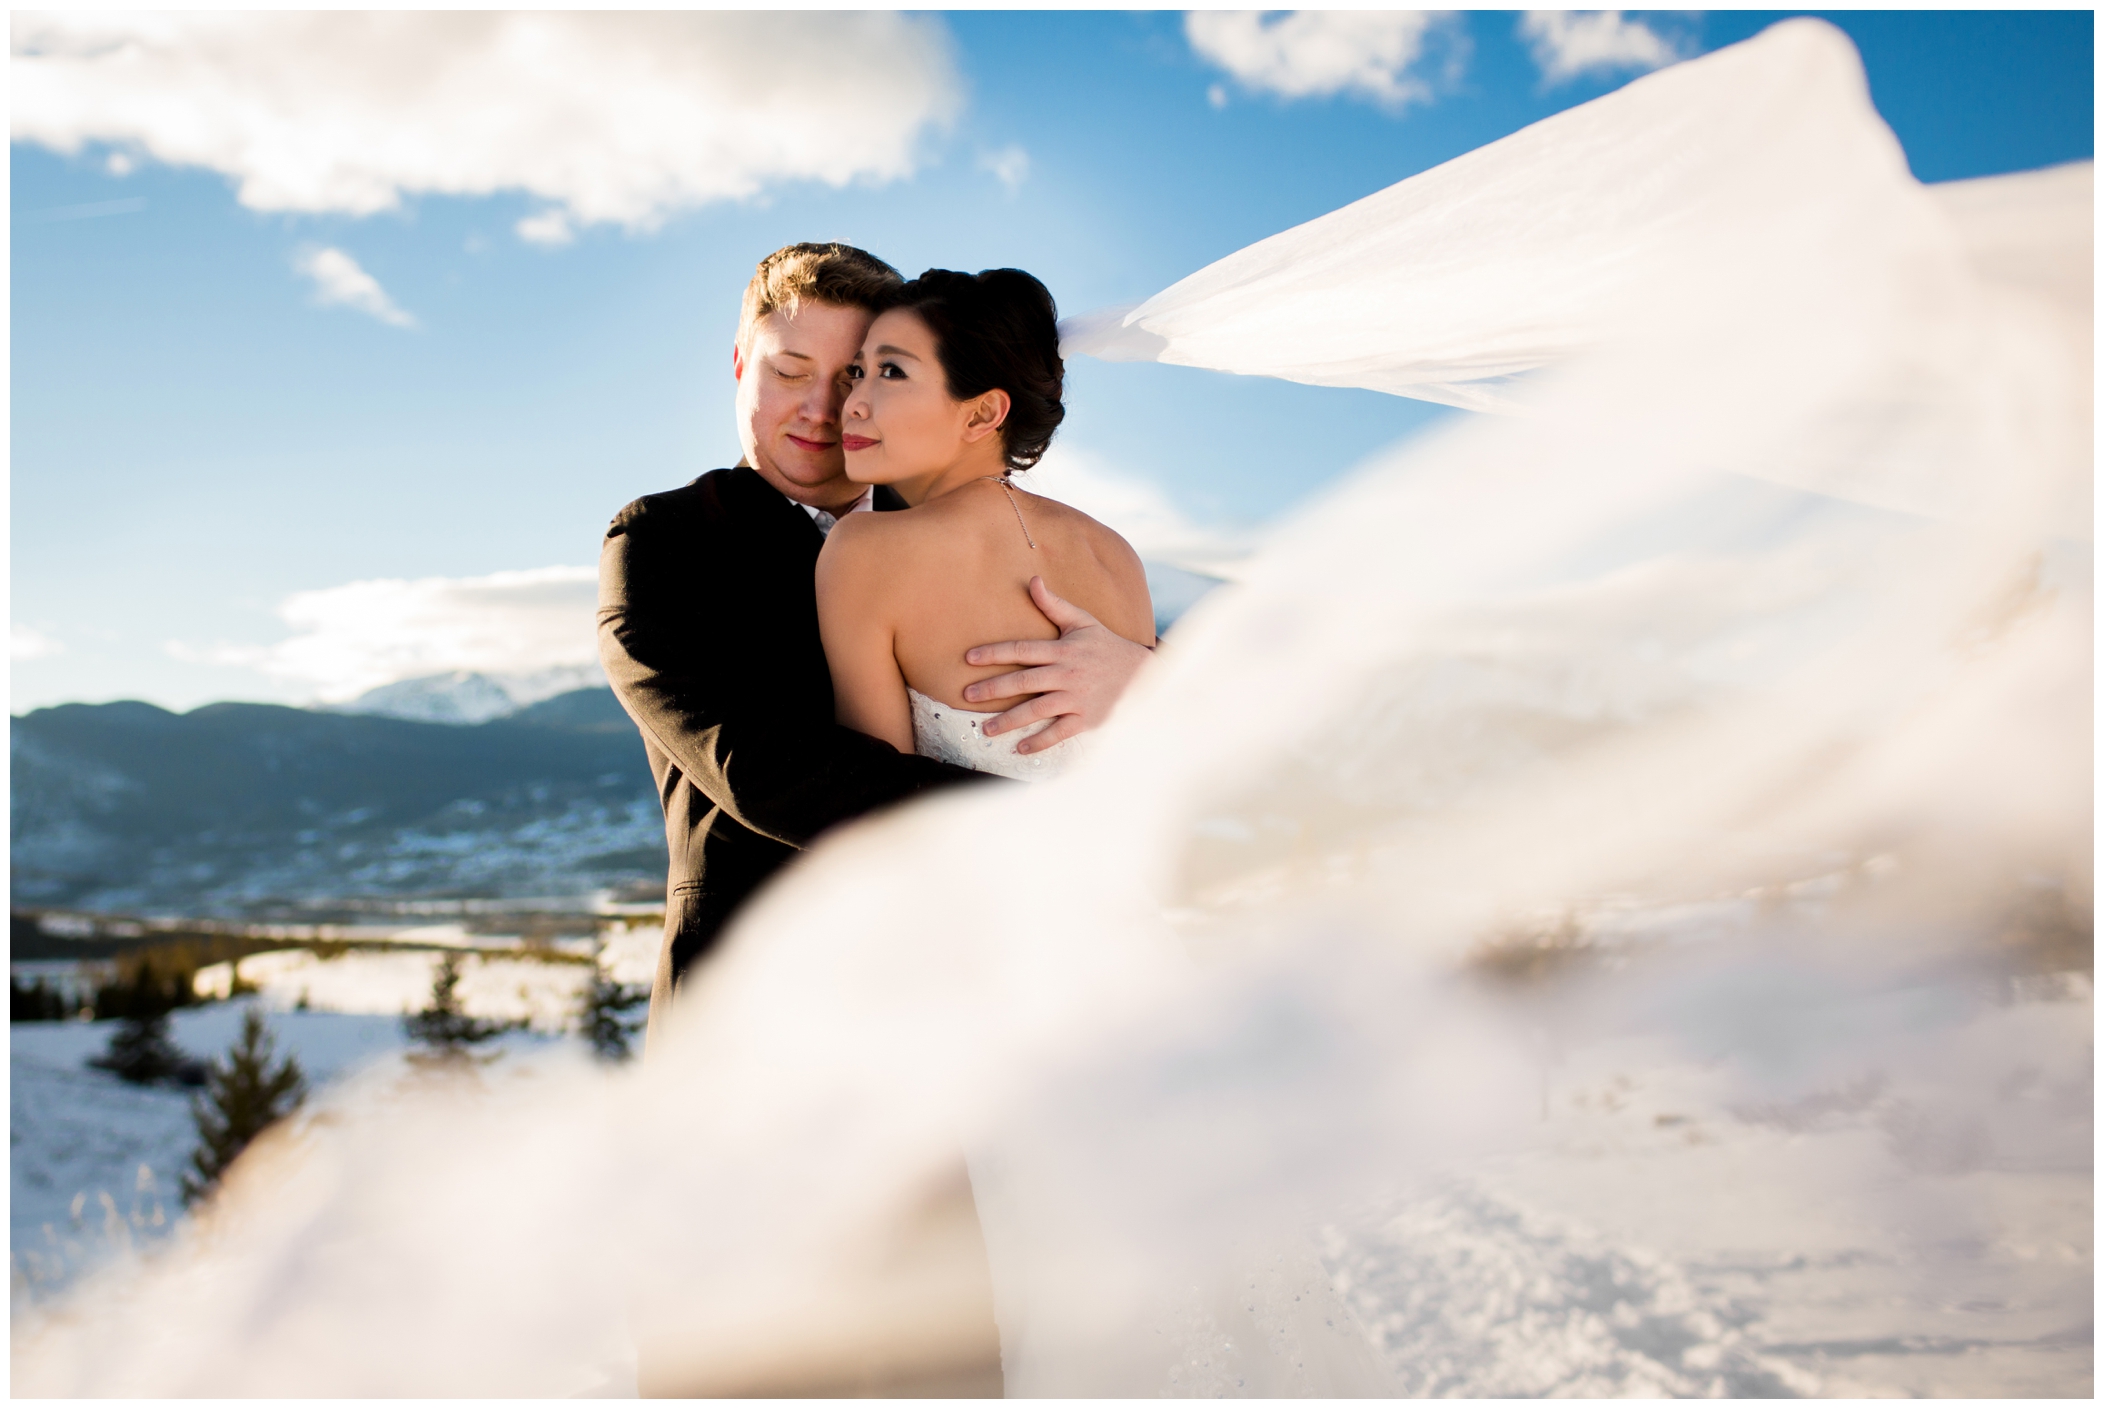 Colorado winter wedding photos by Breckenridge wedding photographer Plum Pretty Photography